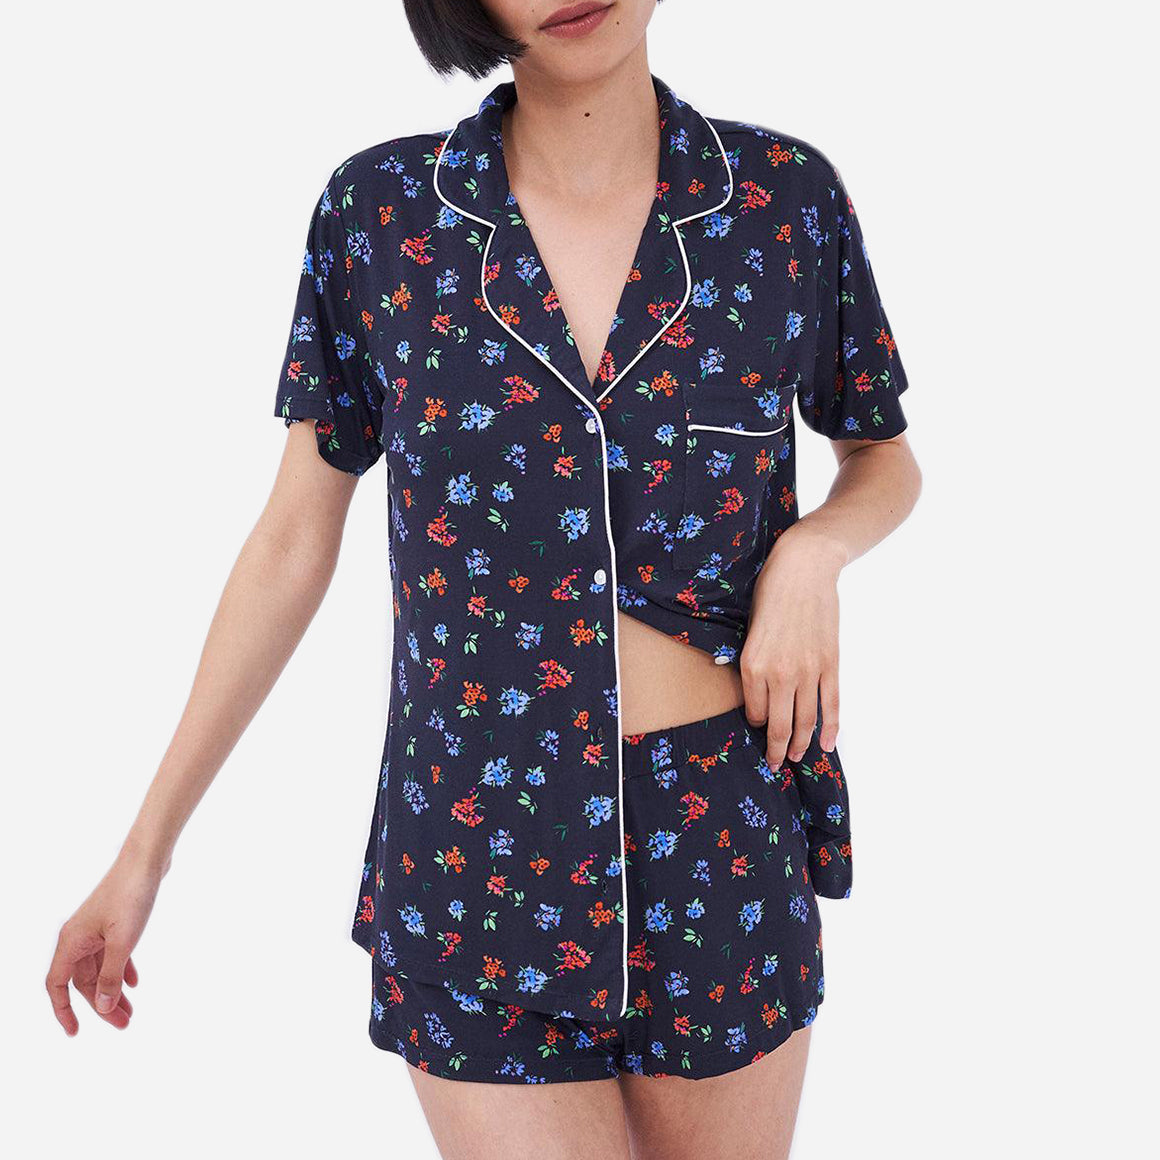 Ultimate Tencel Modal Pajamas, Pajama Sets & Sleepwear